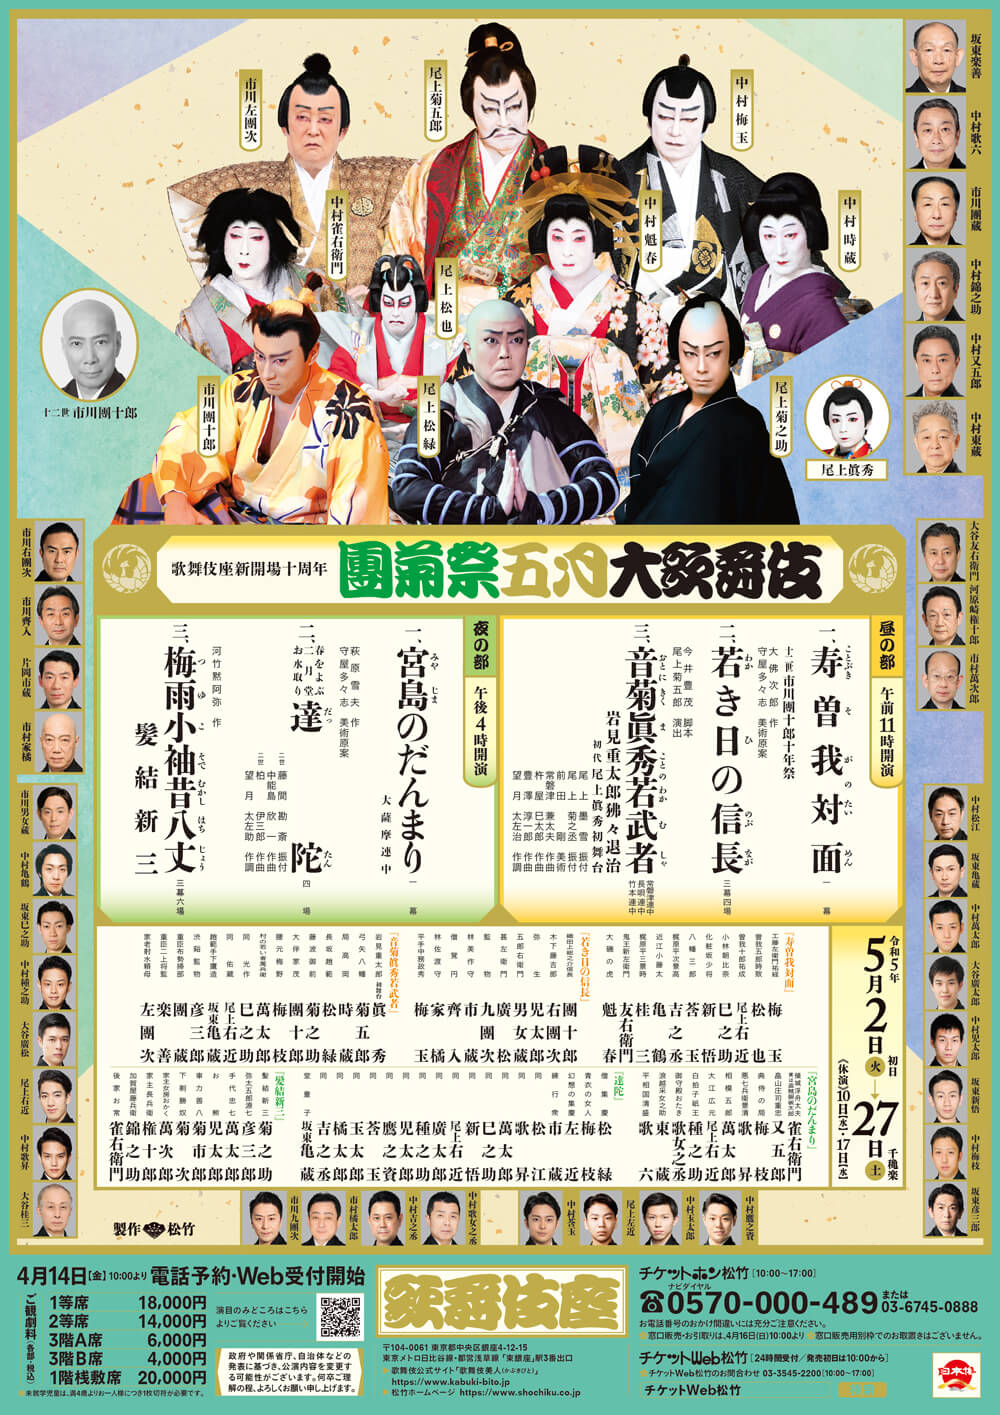 

歌舞伎座新開場十周年
團菊祭五月大歌舞伎


